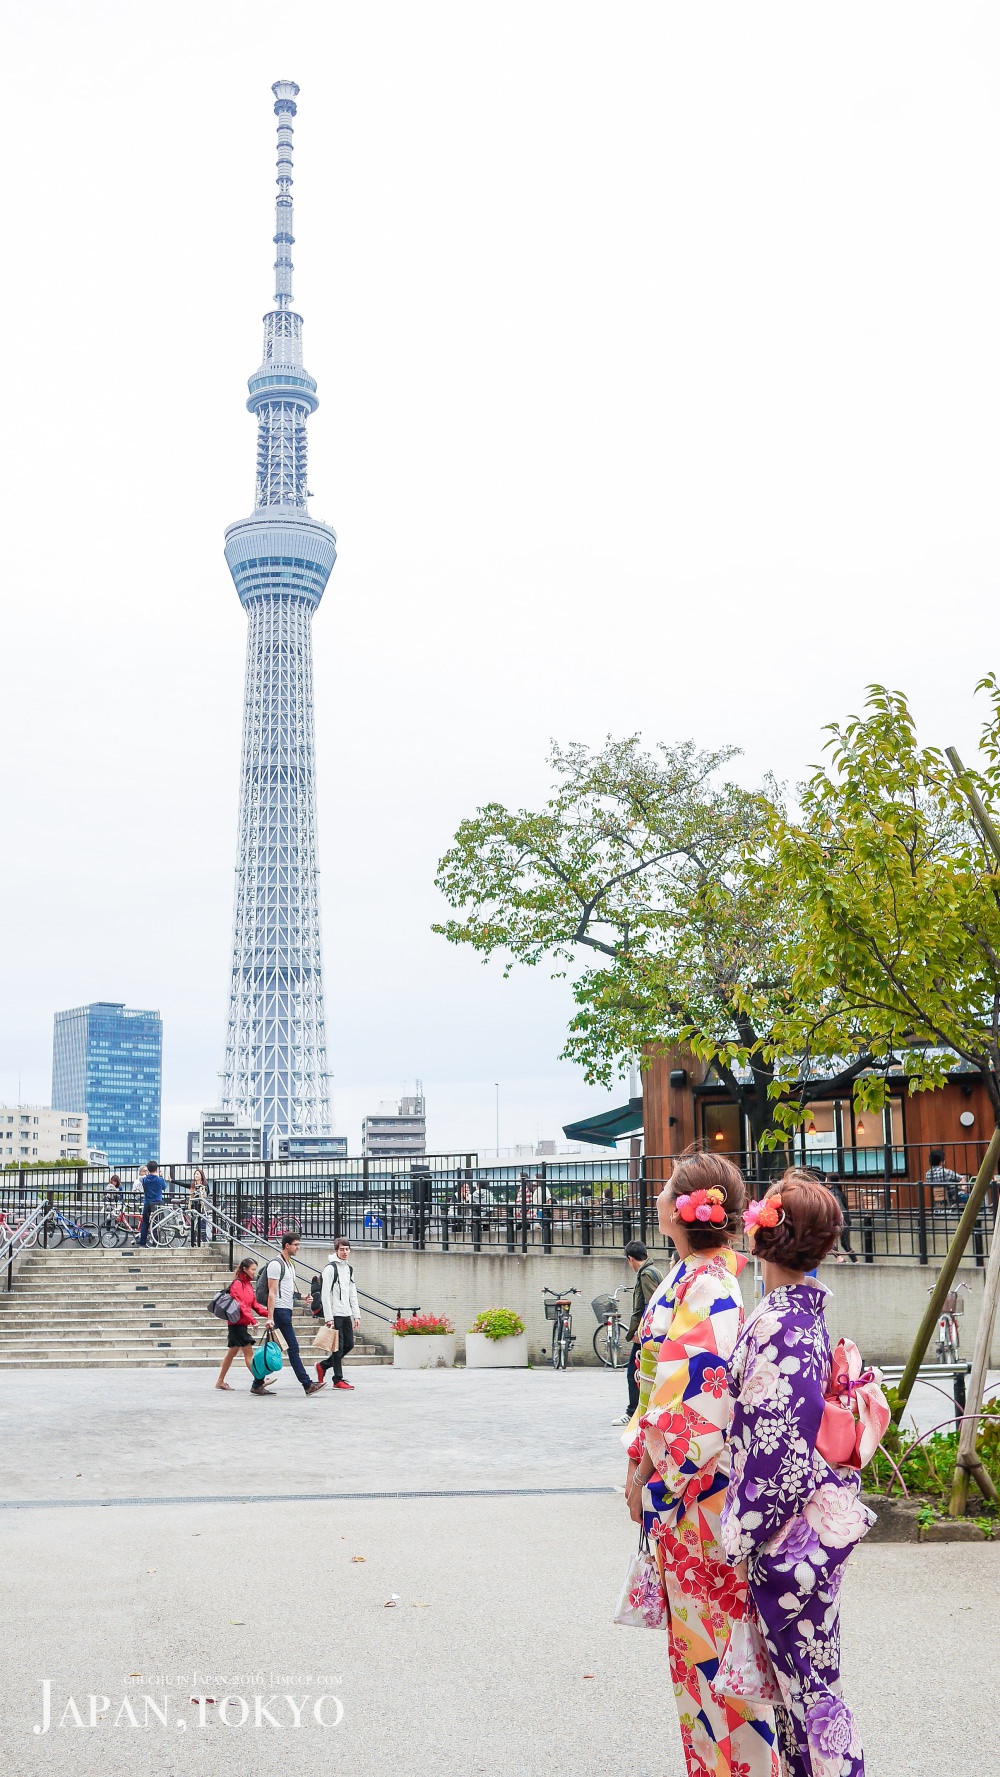 日本穿和服,日本和服體驗,東京和服體驗,klook和服